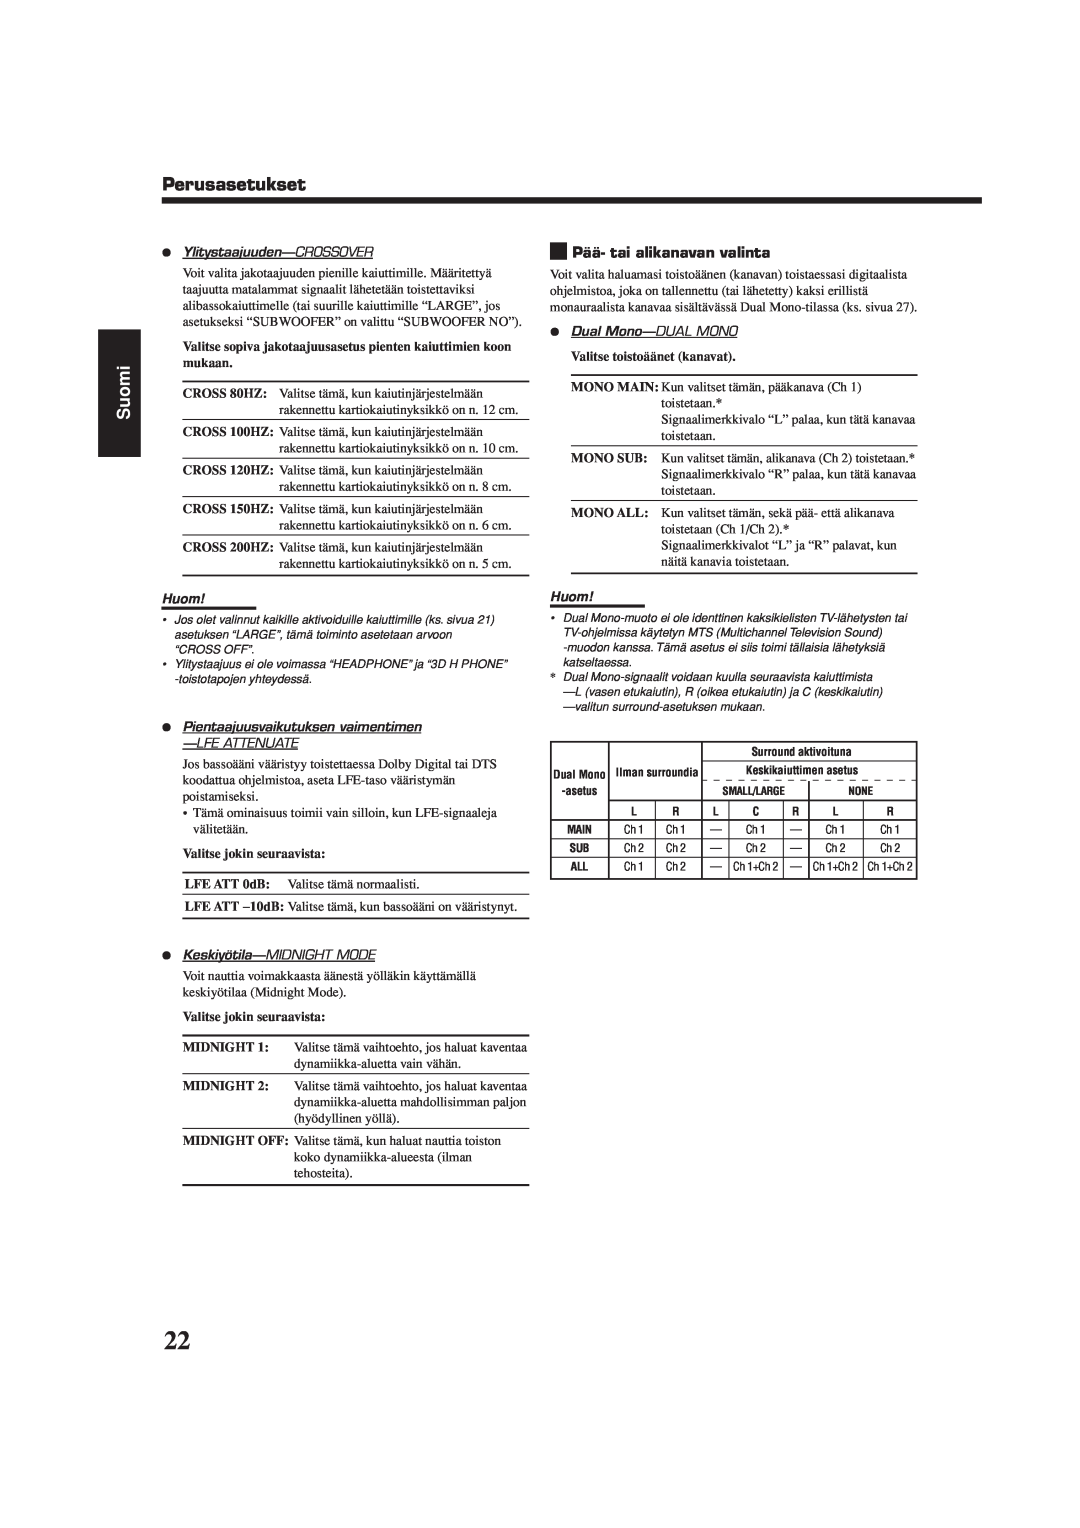 JVC RX-5060S manual Perusasetukset, Suomi, ¶Ylitystaajuuden-CROSSOVER, Huom, ¶Dual Mono-DUALMONO, ¶Keskiyötila-MIDNIGHTMODE 